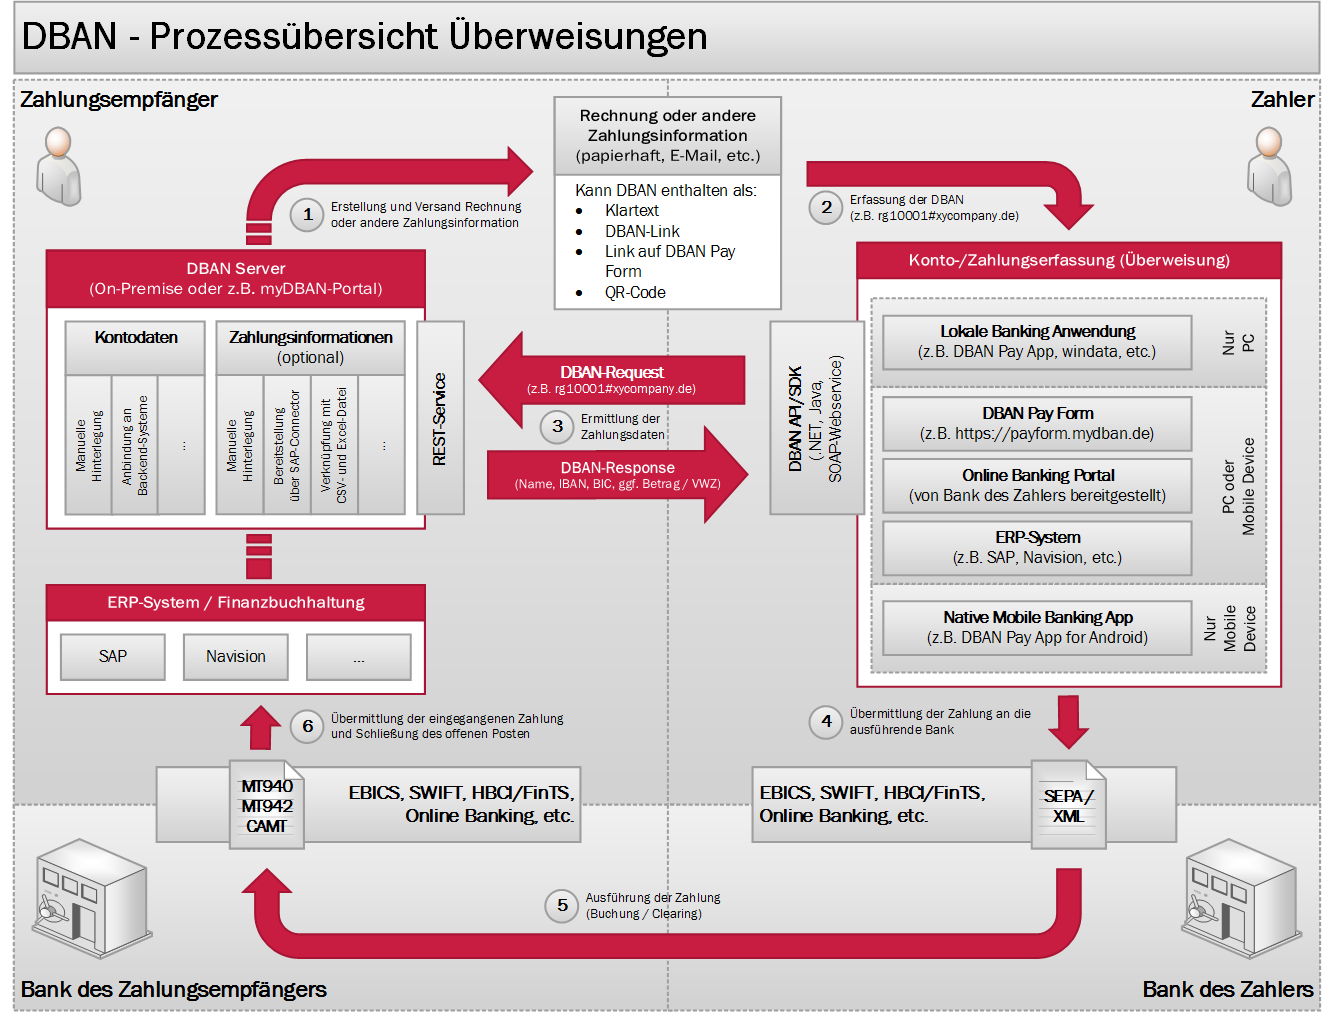 DBAN-Prozessuebersicht-Ueberweisungen.png